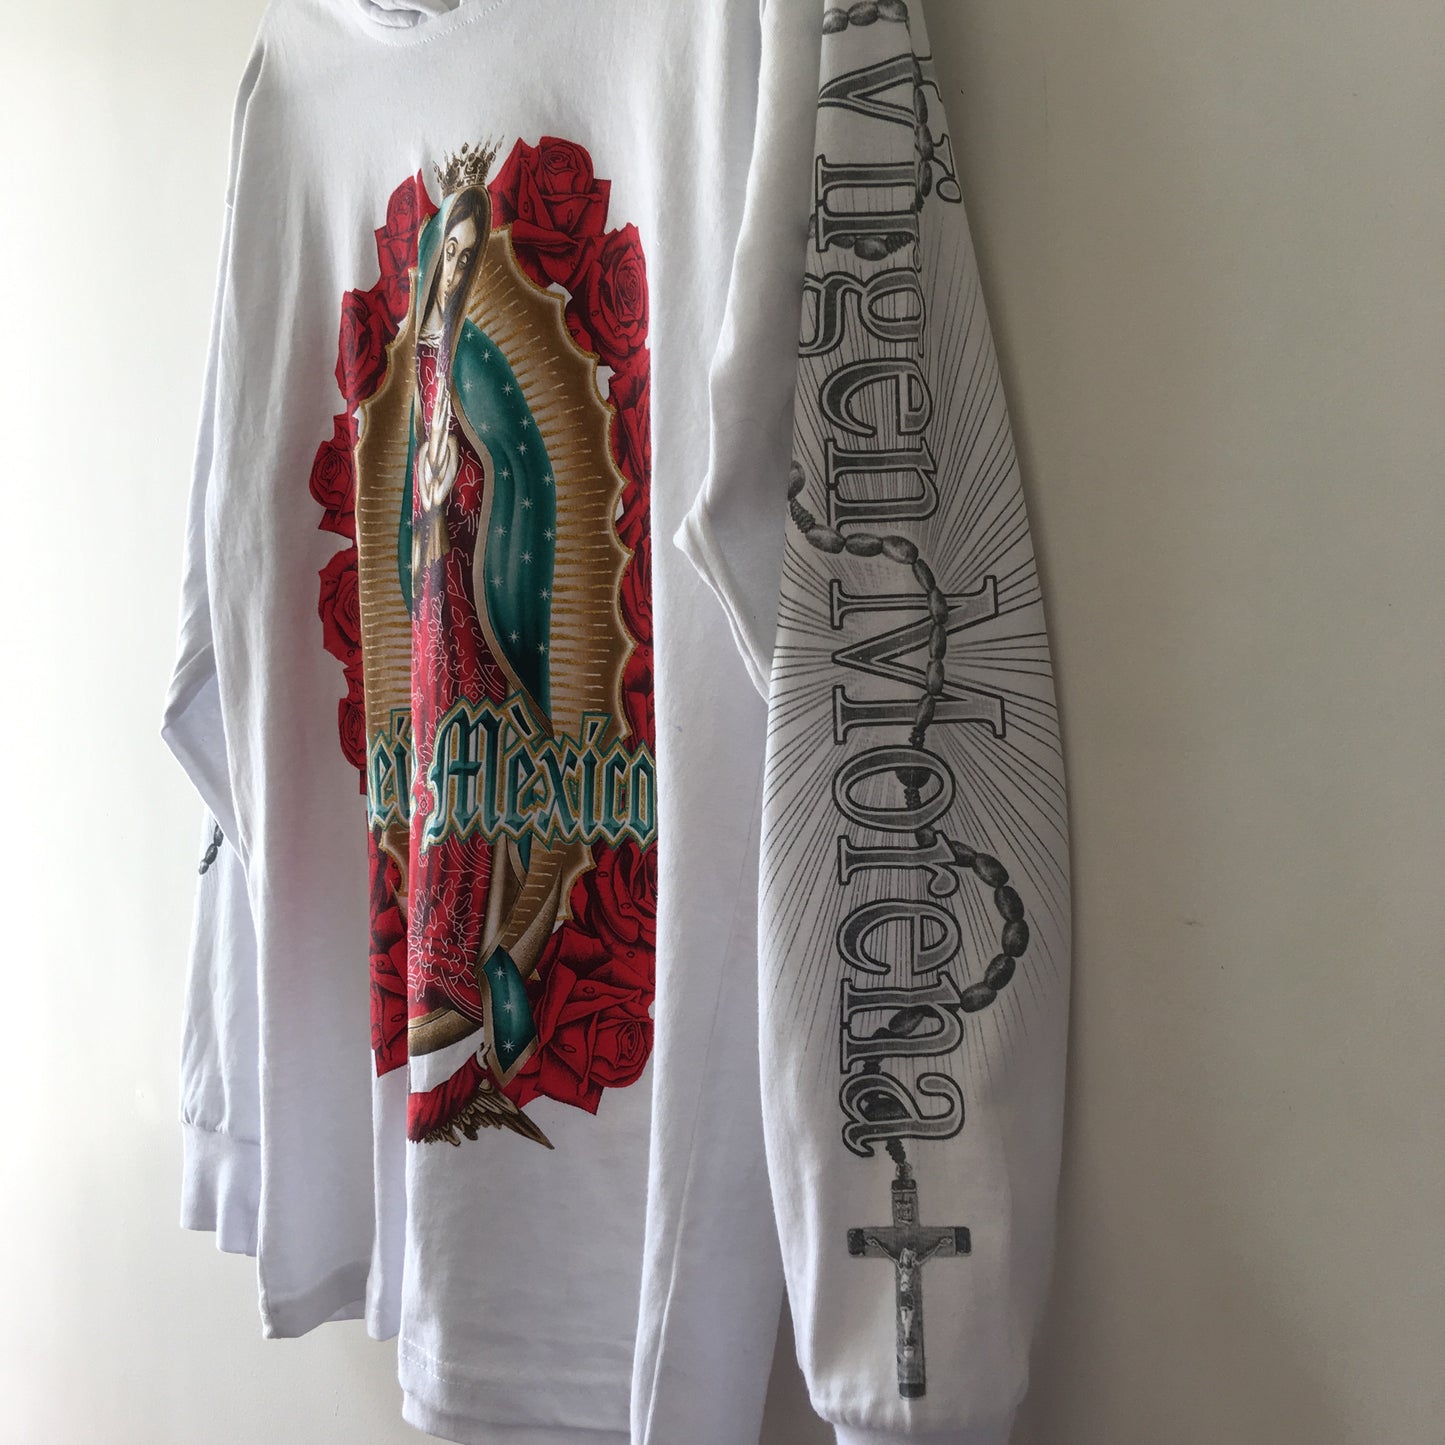 Queen of Mexico T-shirt/Sweatshirt